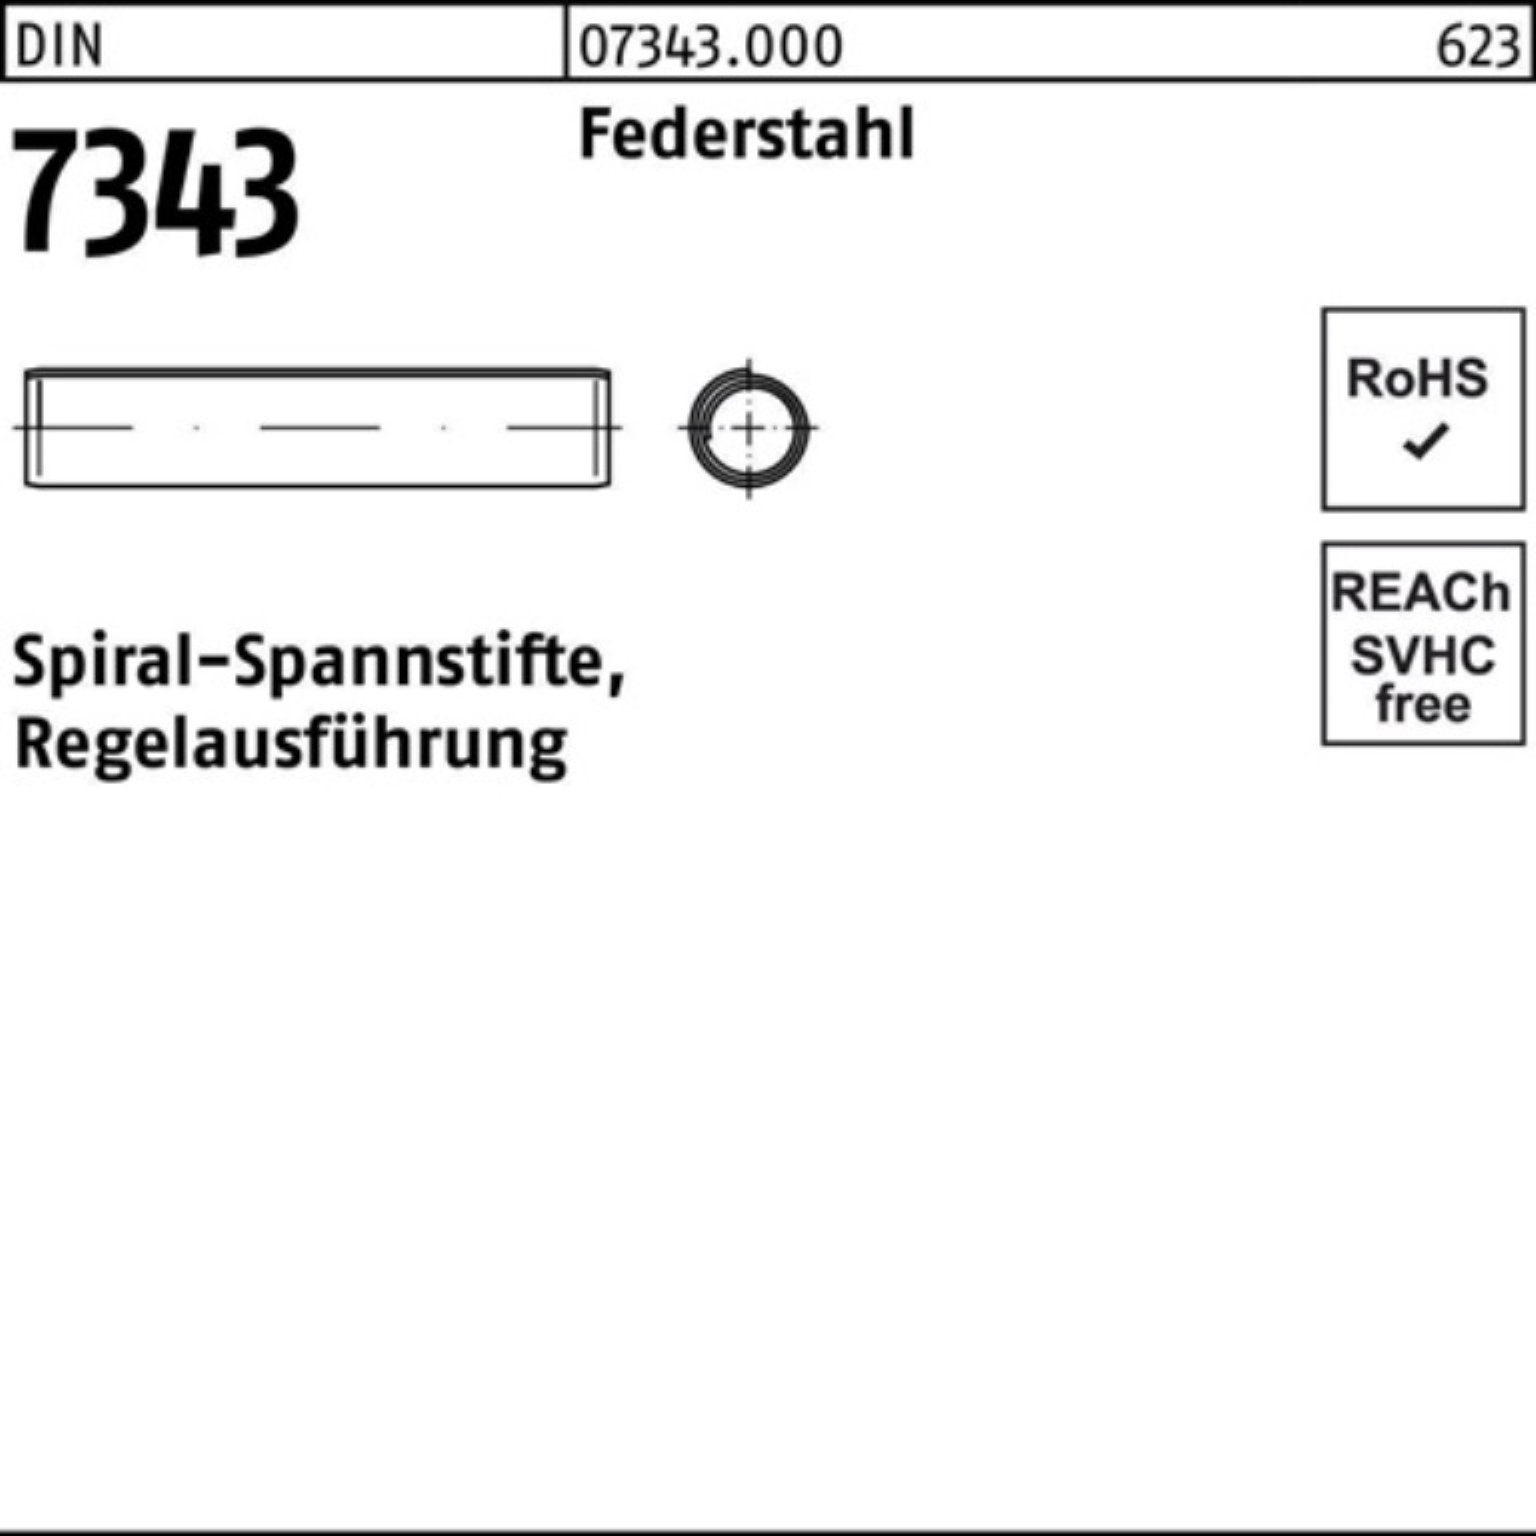 2x Spiralspannstift 8750 1000er DIN Regela Federstahl 7343/ISO Pack Reyher Spannstift 16